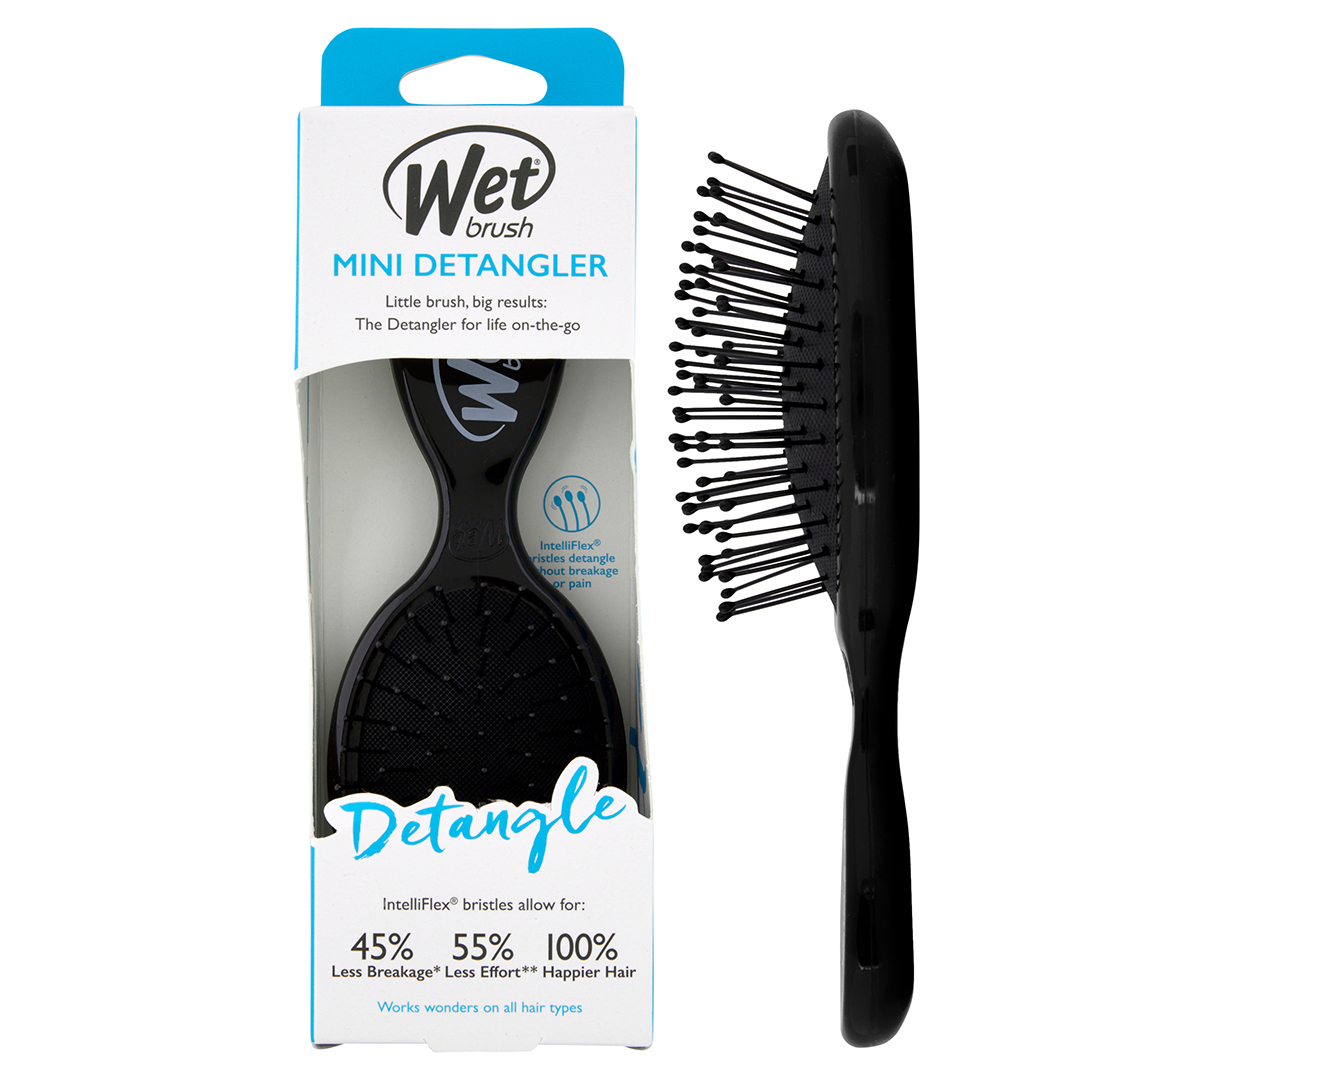 Wet Brush Original Detangler Brush, Black